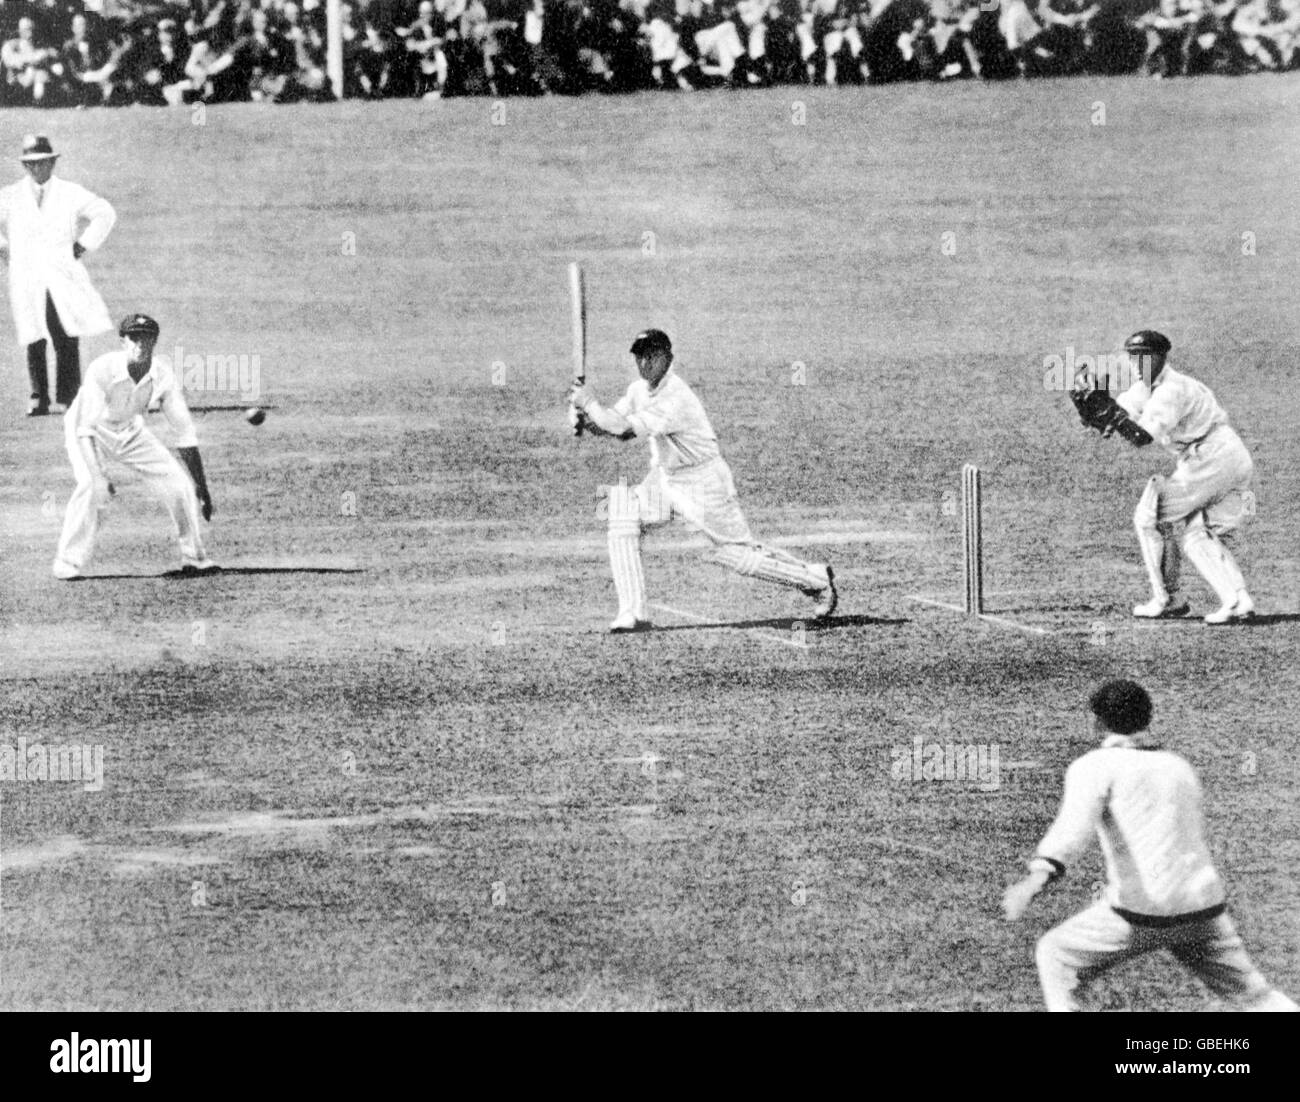 Cricket - The Ashes - zweiter Test - England gegen Australien - erster Tag. Englands Morris Leyland (c) treibt den Ball an die Grenze, beobachtet vom australischen Wicketkeeper Bert Oldfield (r) Stockfoto